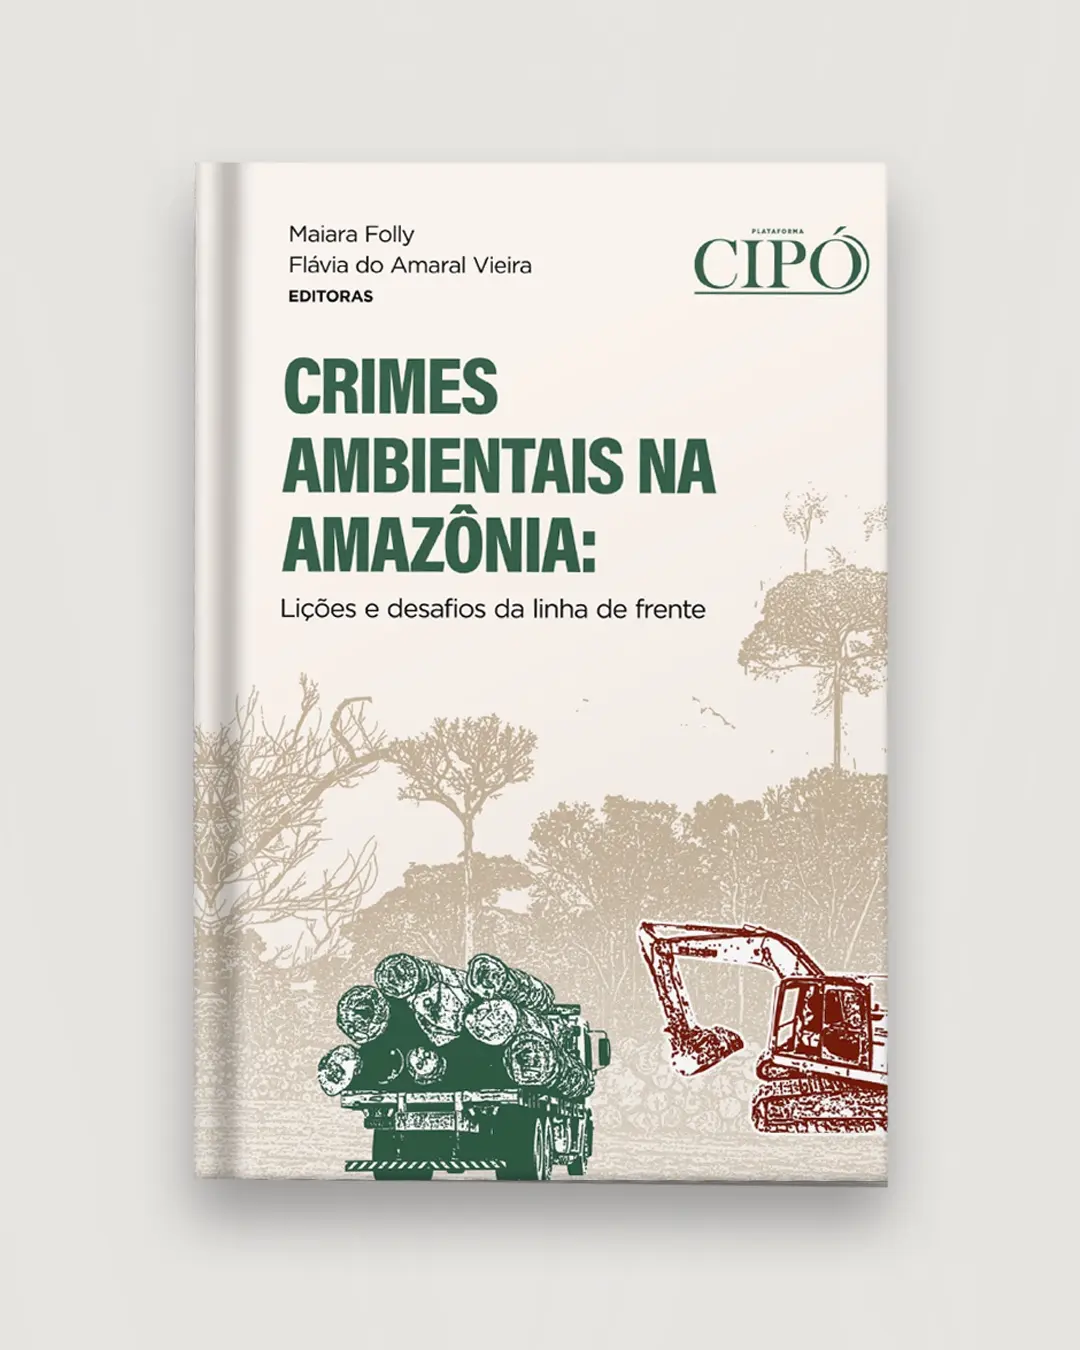 Livro Cipo - Crimes Ambientais na Amazônia: lições e desafios da linha de frente